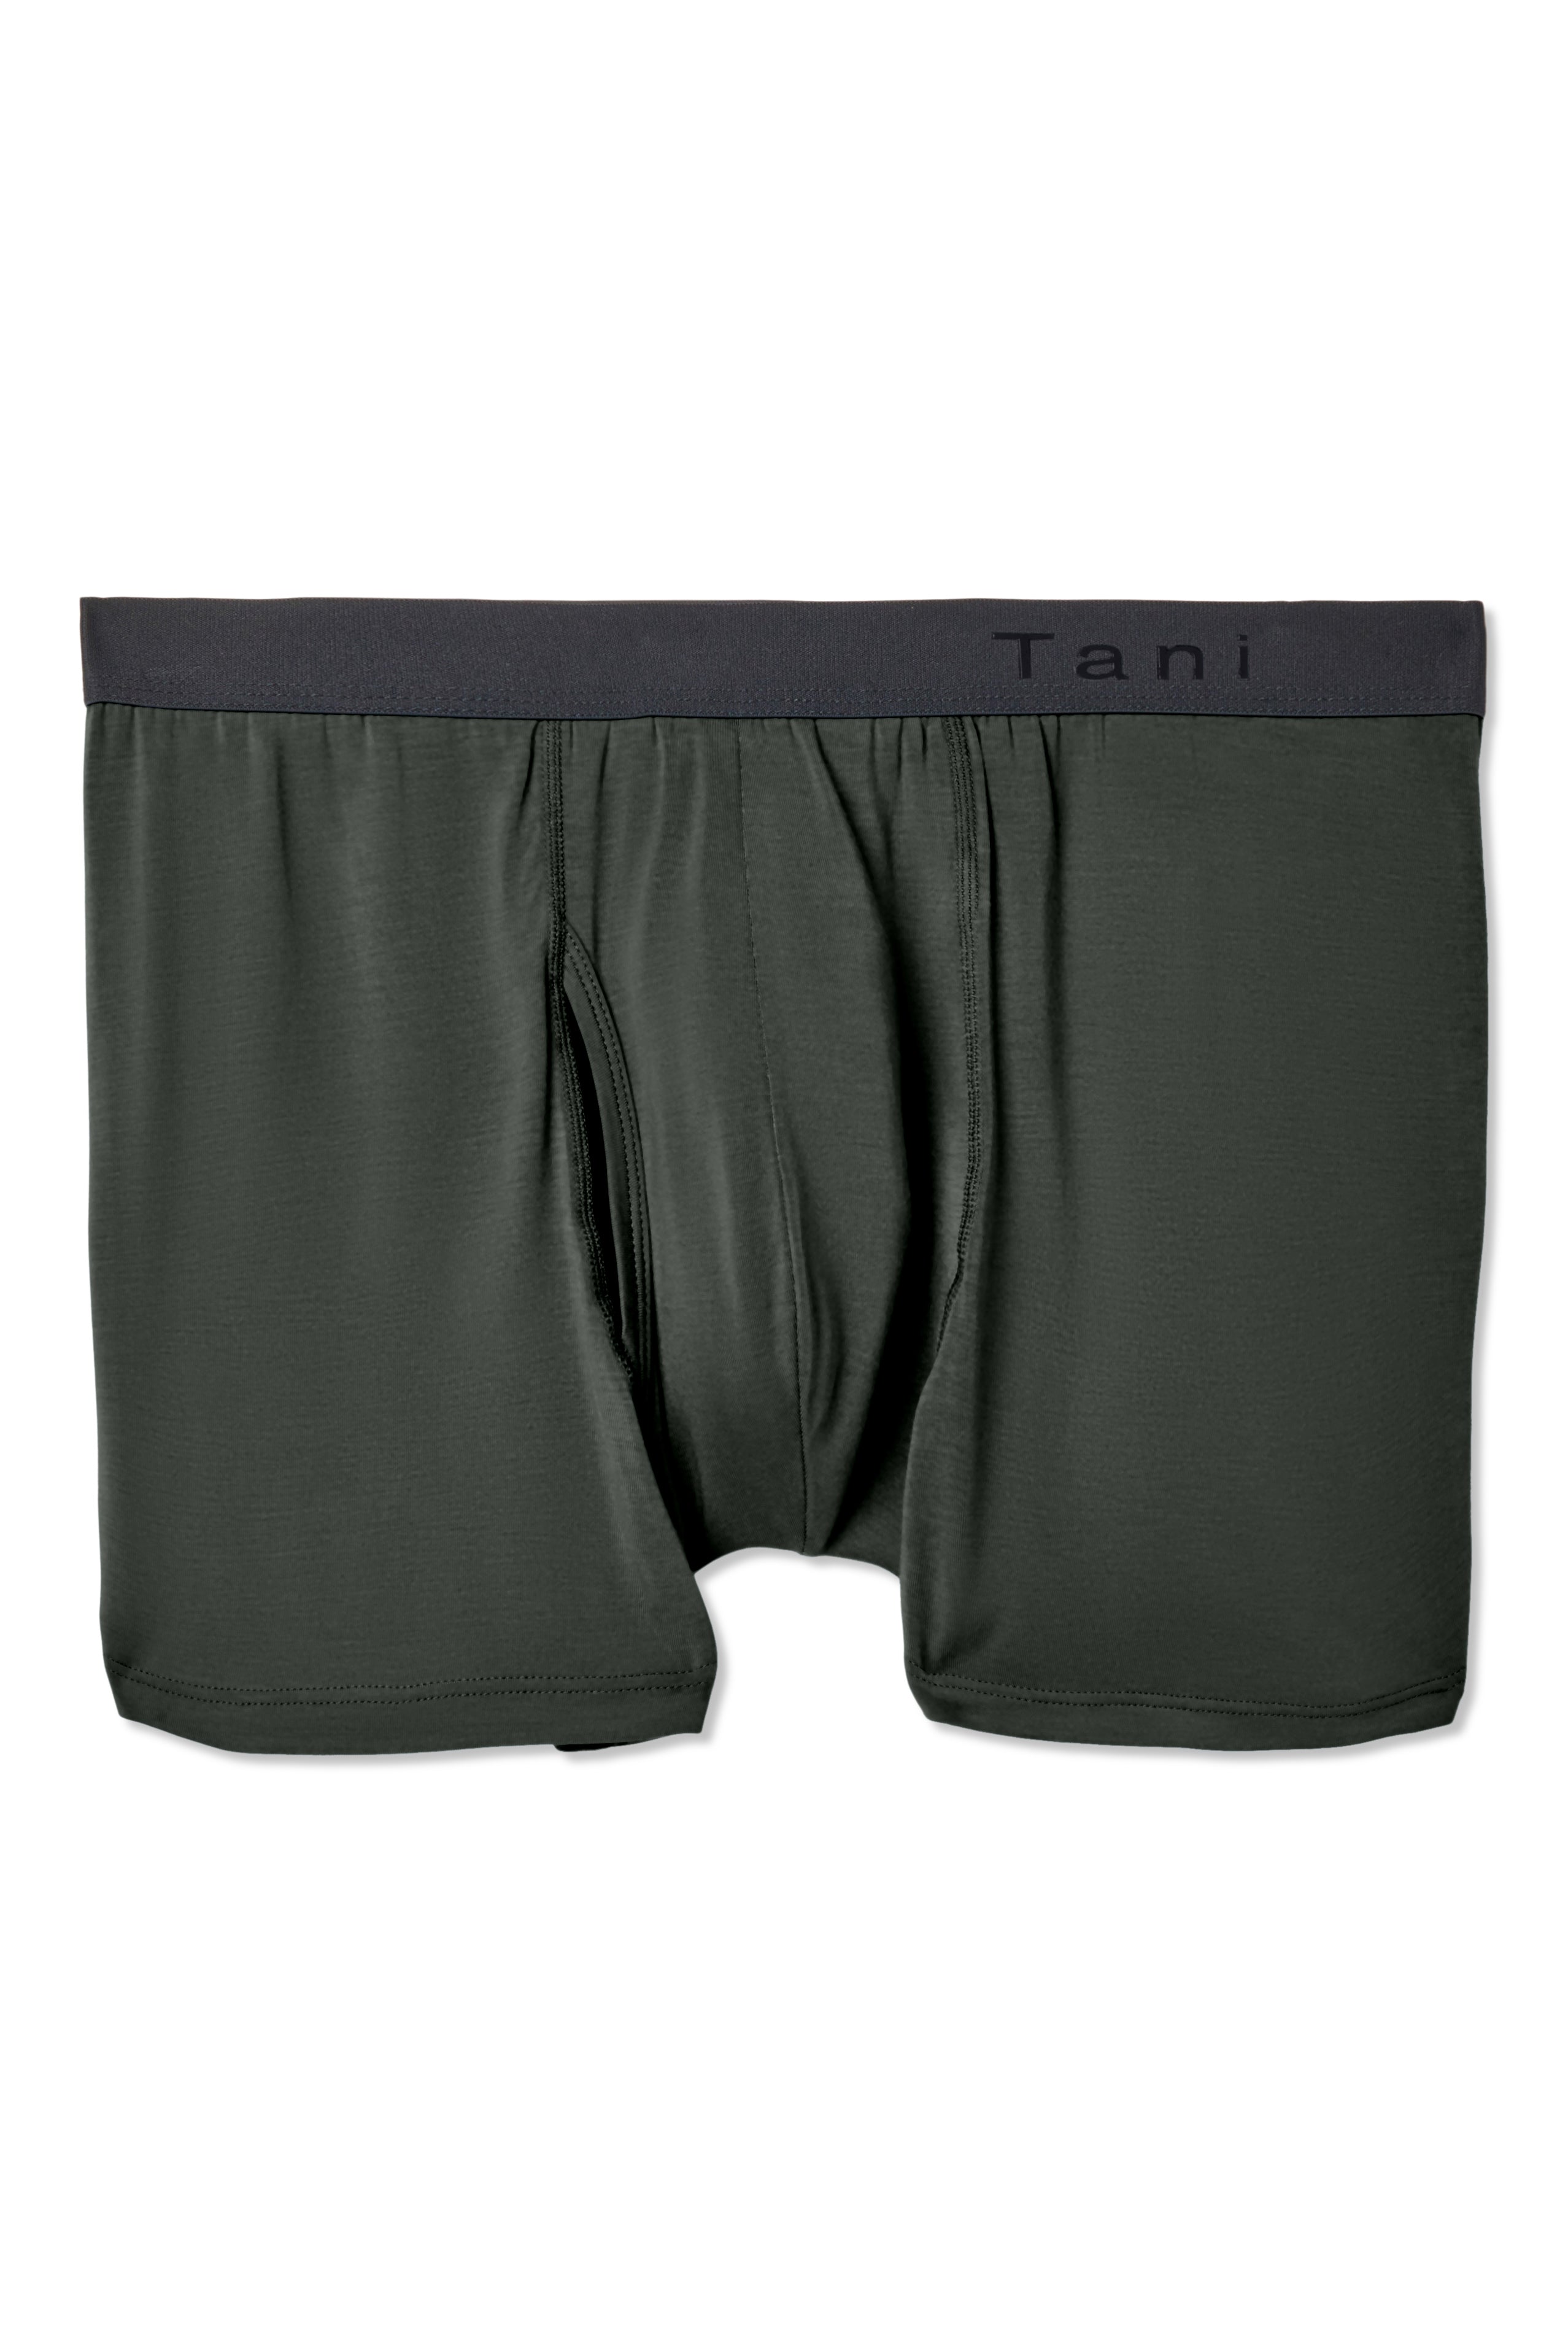 Tani Lounge Boxer – Tani Comfort